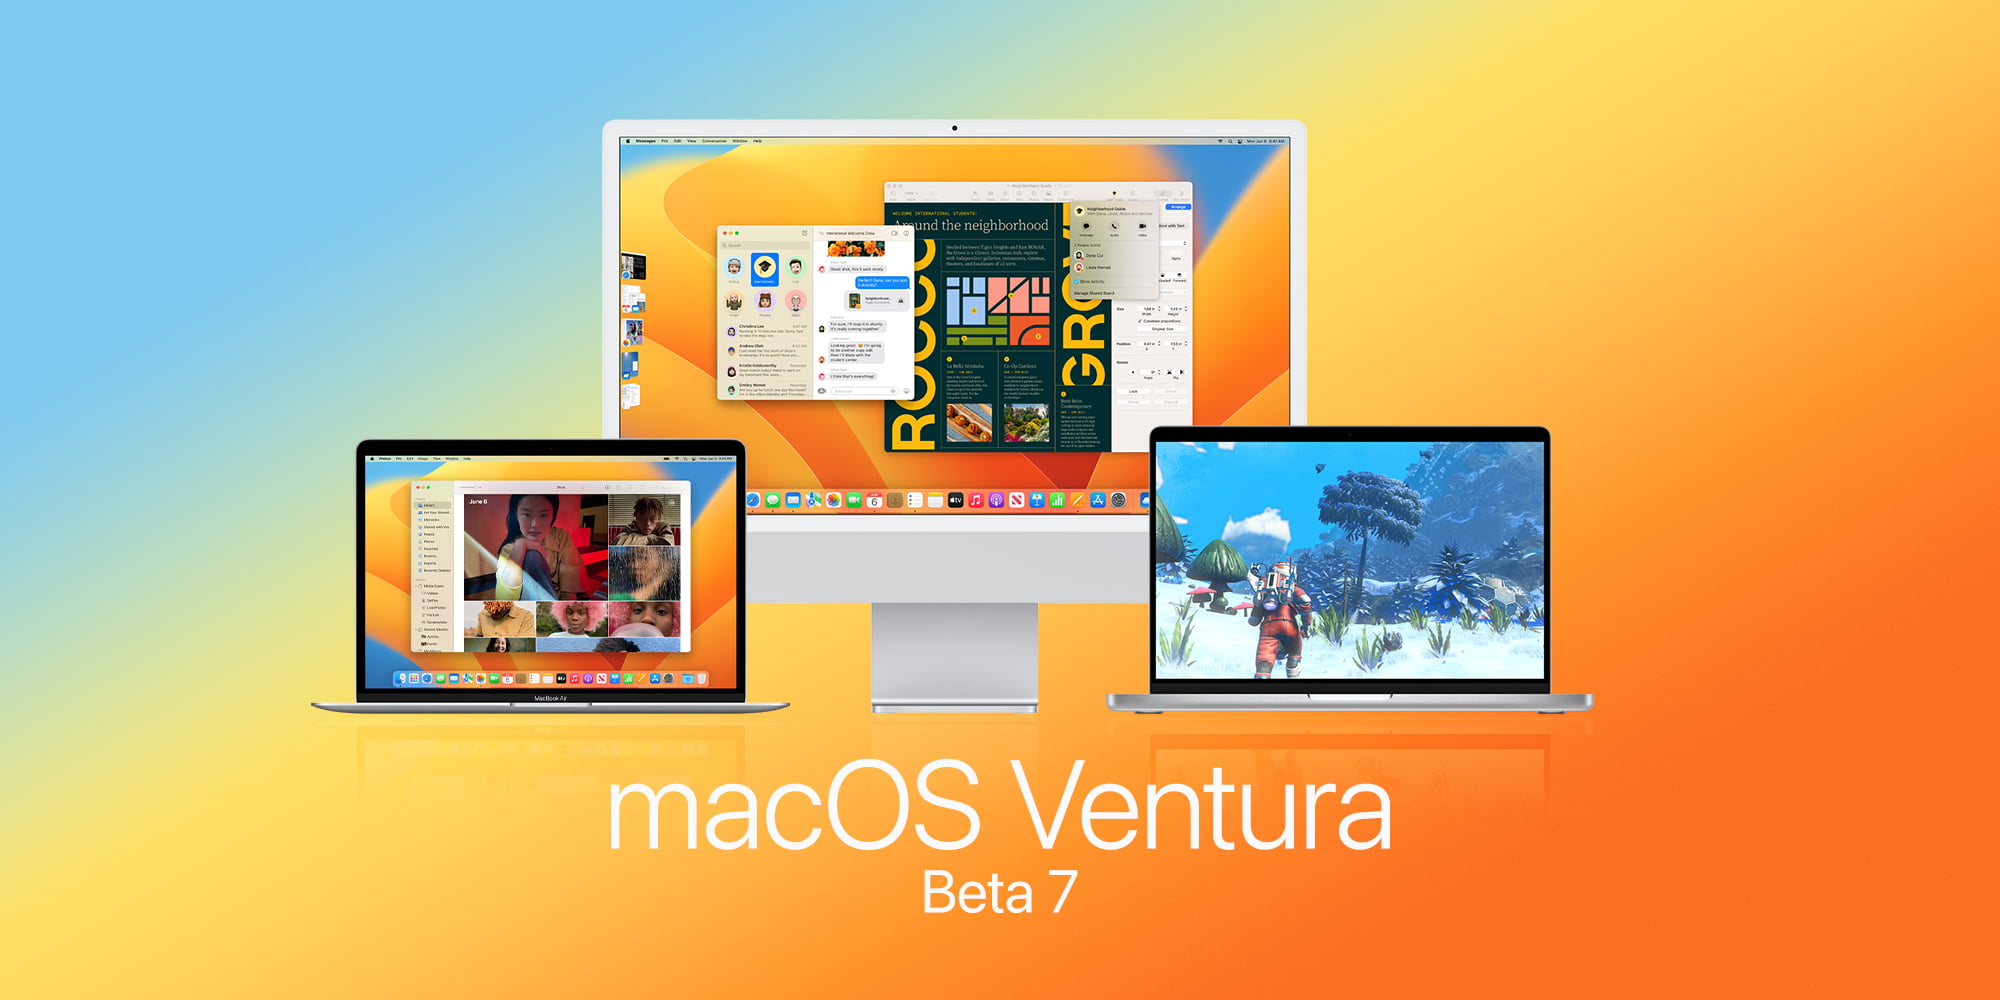 download the last version for ios macOS Ventura